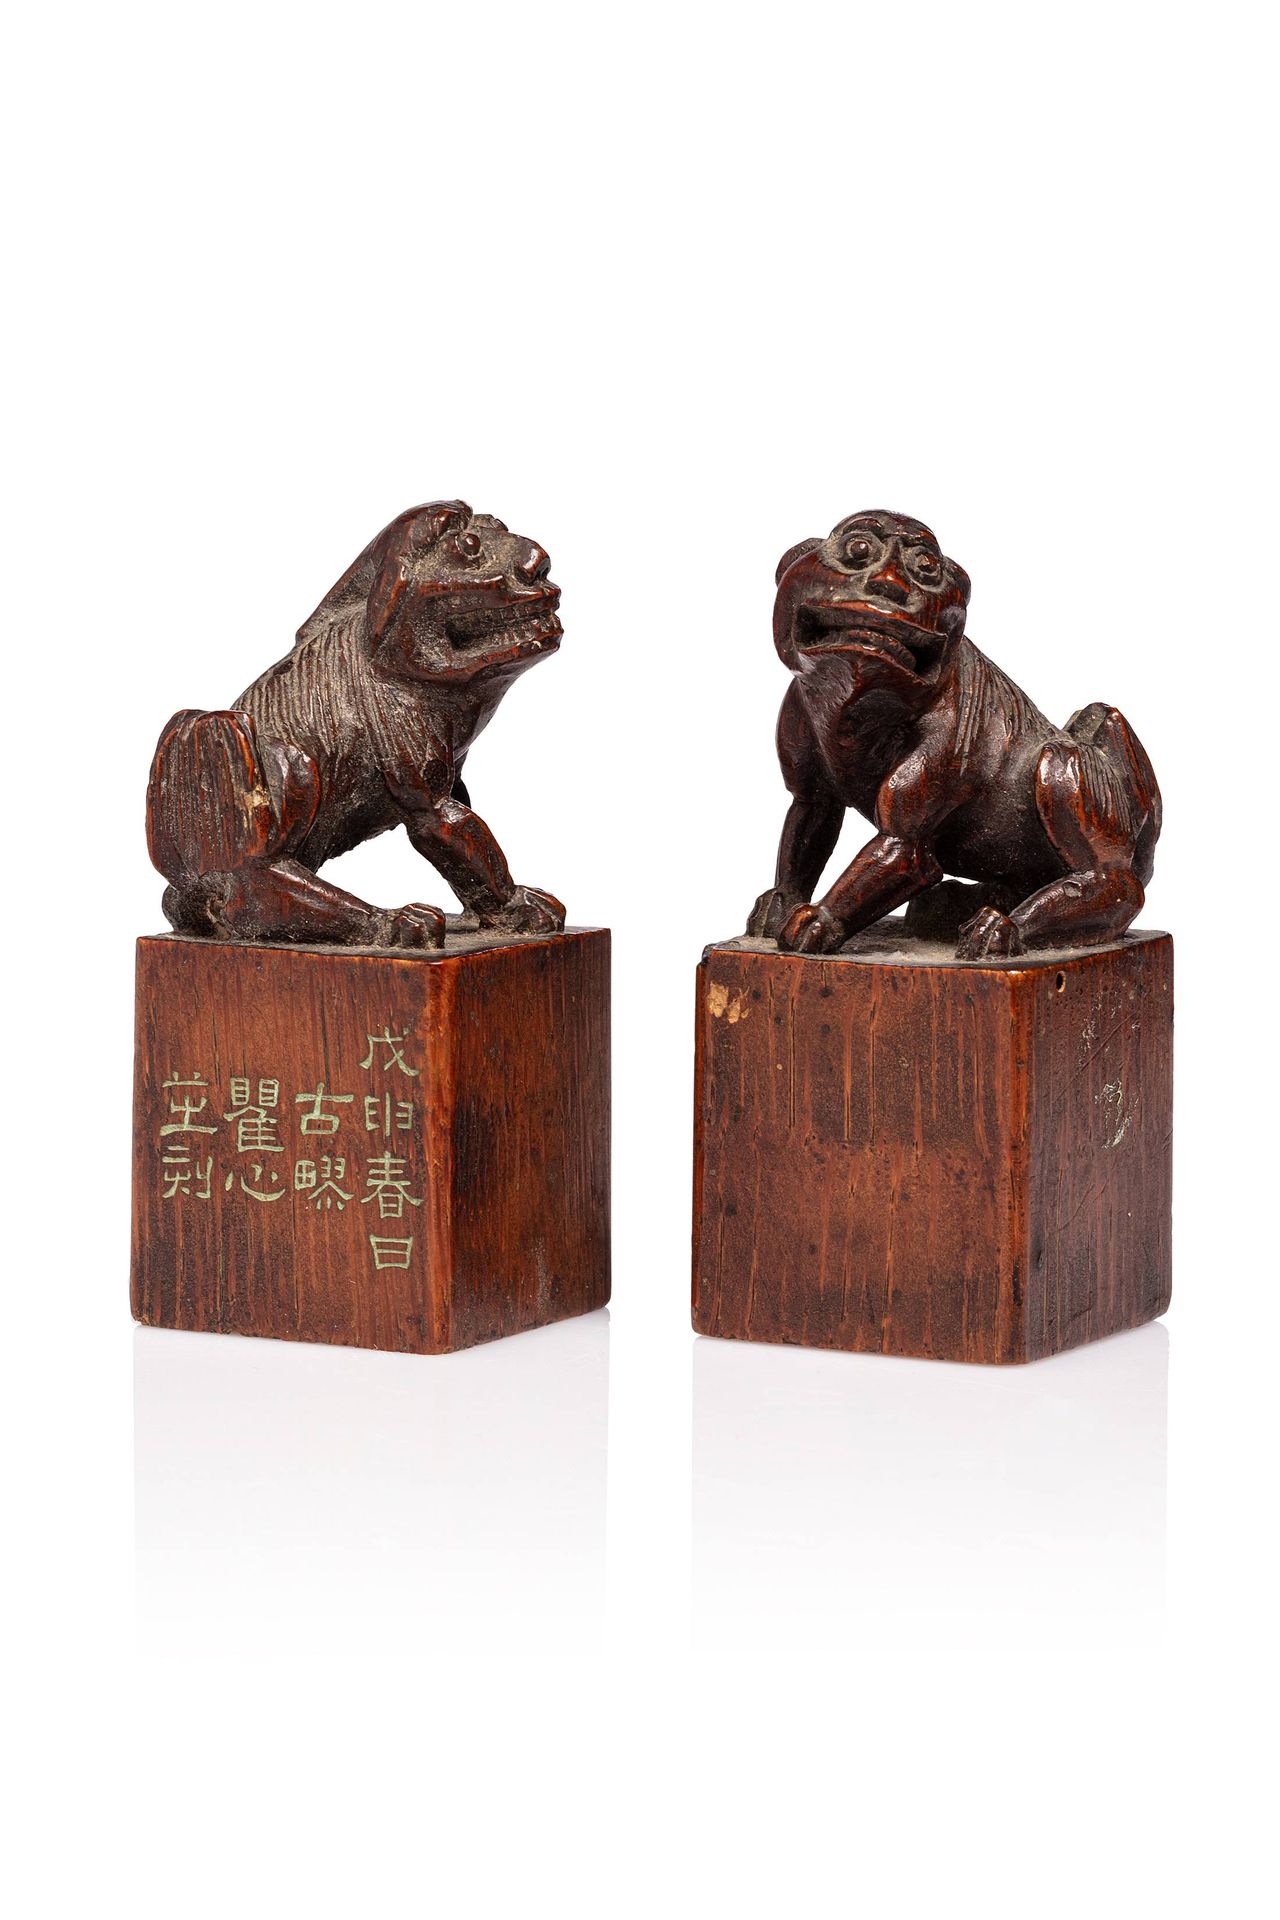 CHINE, XIXe siècle 
Paire de sceaux en bambou sculpté les prises formées de chie&hellip;